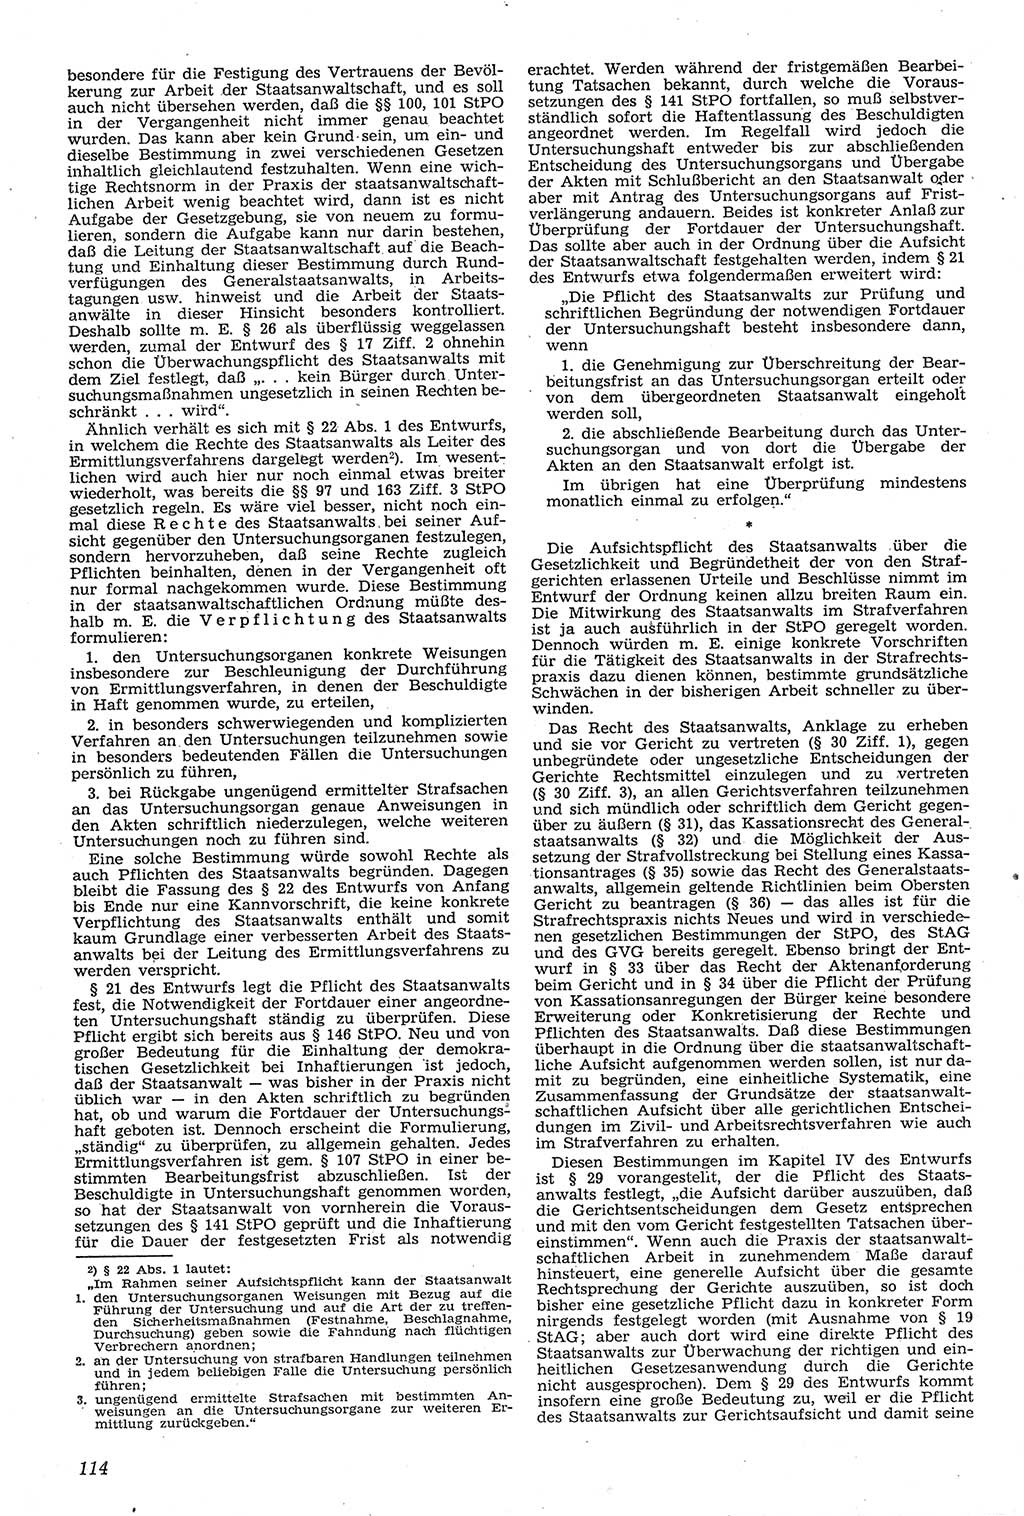 Neue Justiz (NJ), Zeitschrift für Recht und Rechtswissenschaft [Deutsche Demokratische Republik (DDR)], 11. Jahrgang 1957, Seite 114 (NJ DDR 1957, S. 114)